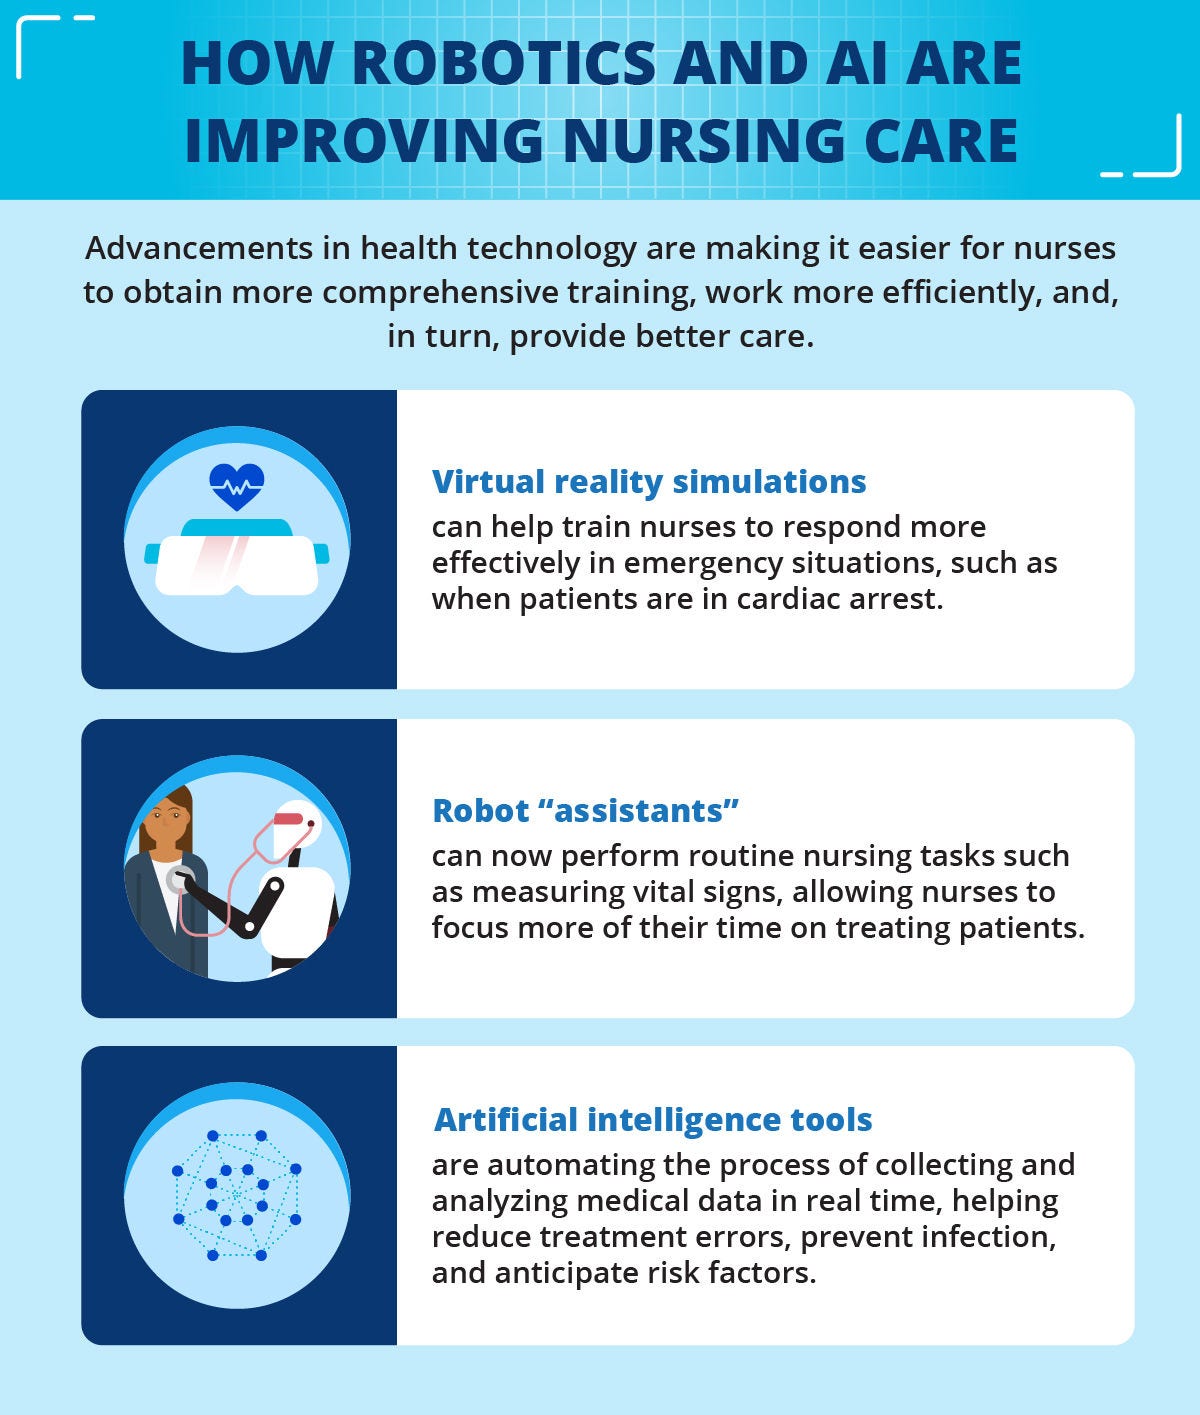 How robotics and AI are improving nursing care.